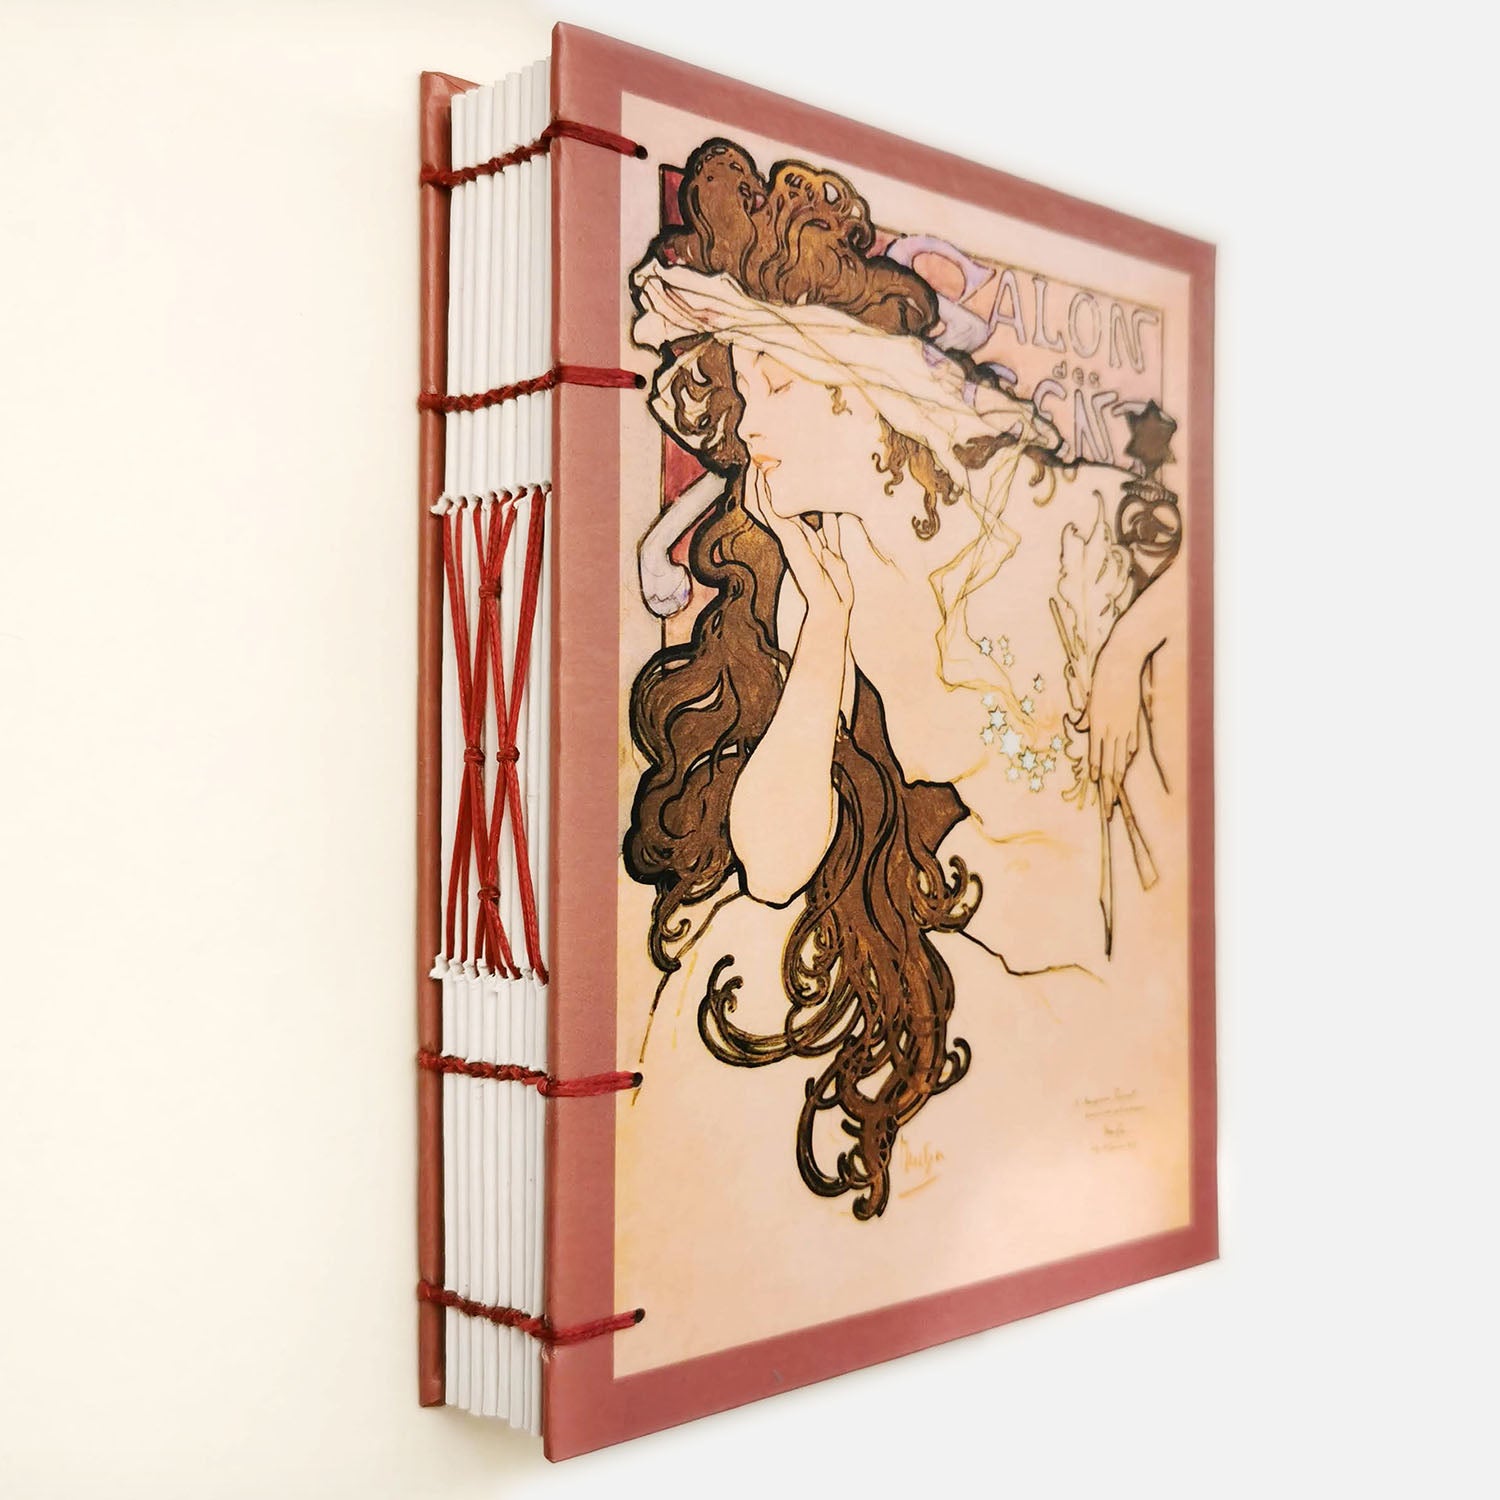 Χειροποίητo Σημειωματάριo με Βυζαντινή Βιβλιοδεσία - Alfons Mucha - Salon des Cent poster